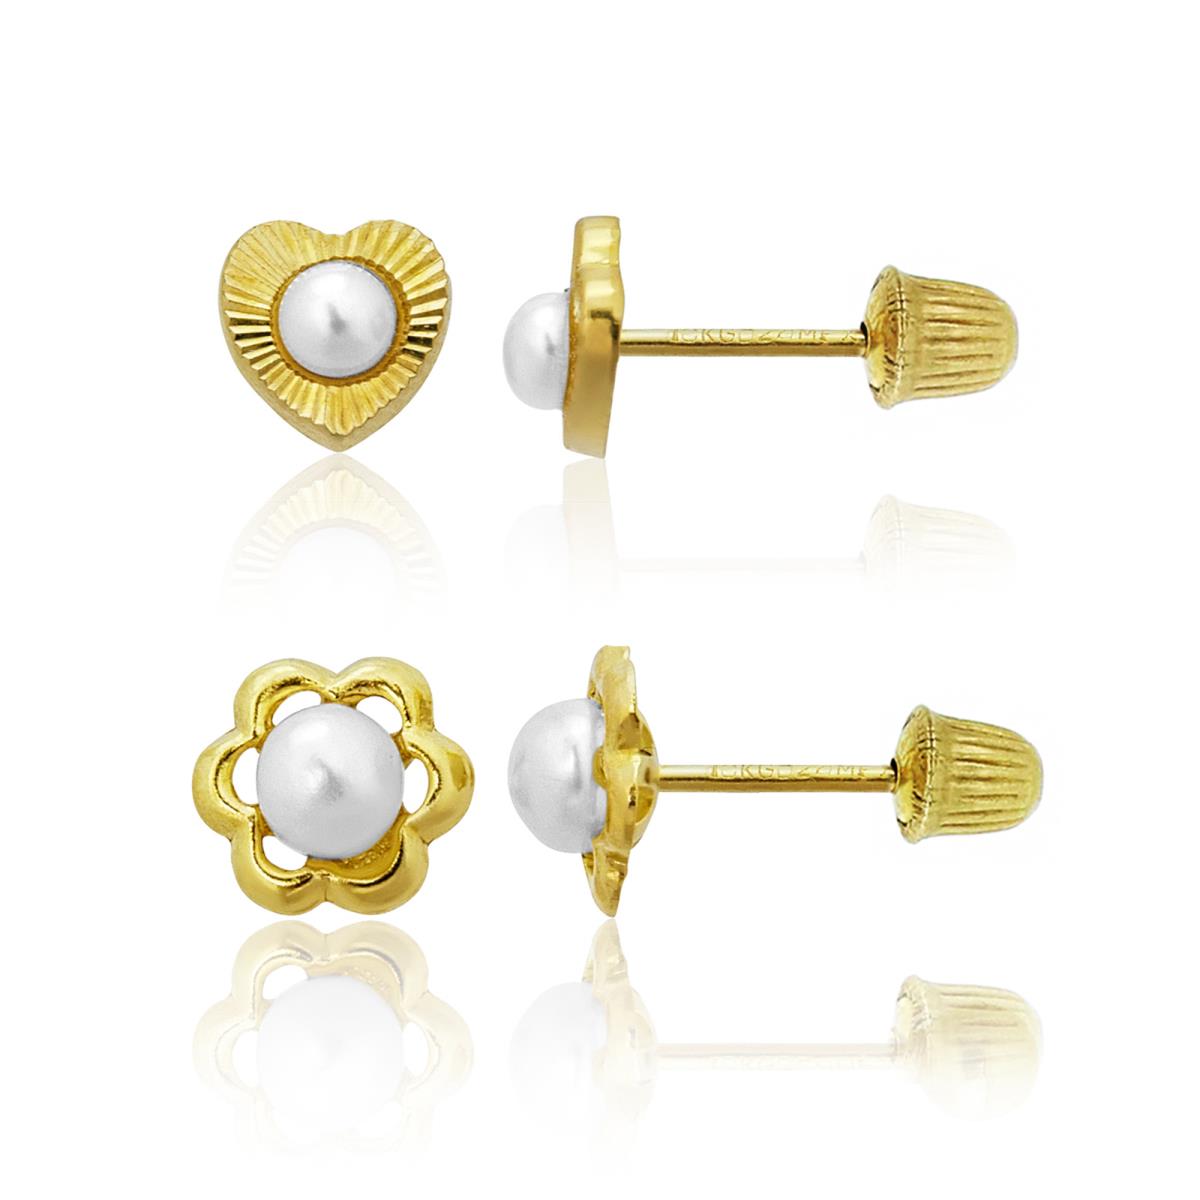 14K Yellow Gold FWP Heart & French Flower Screwback Earring Set